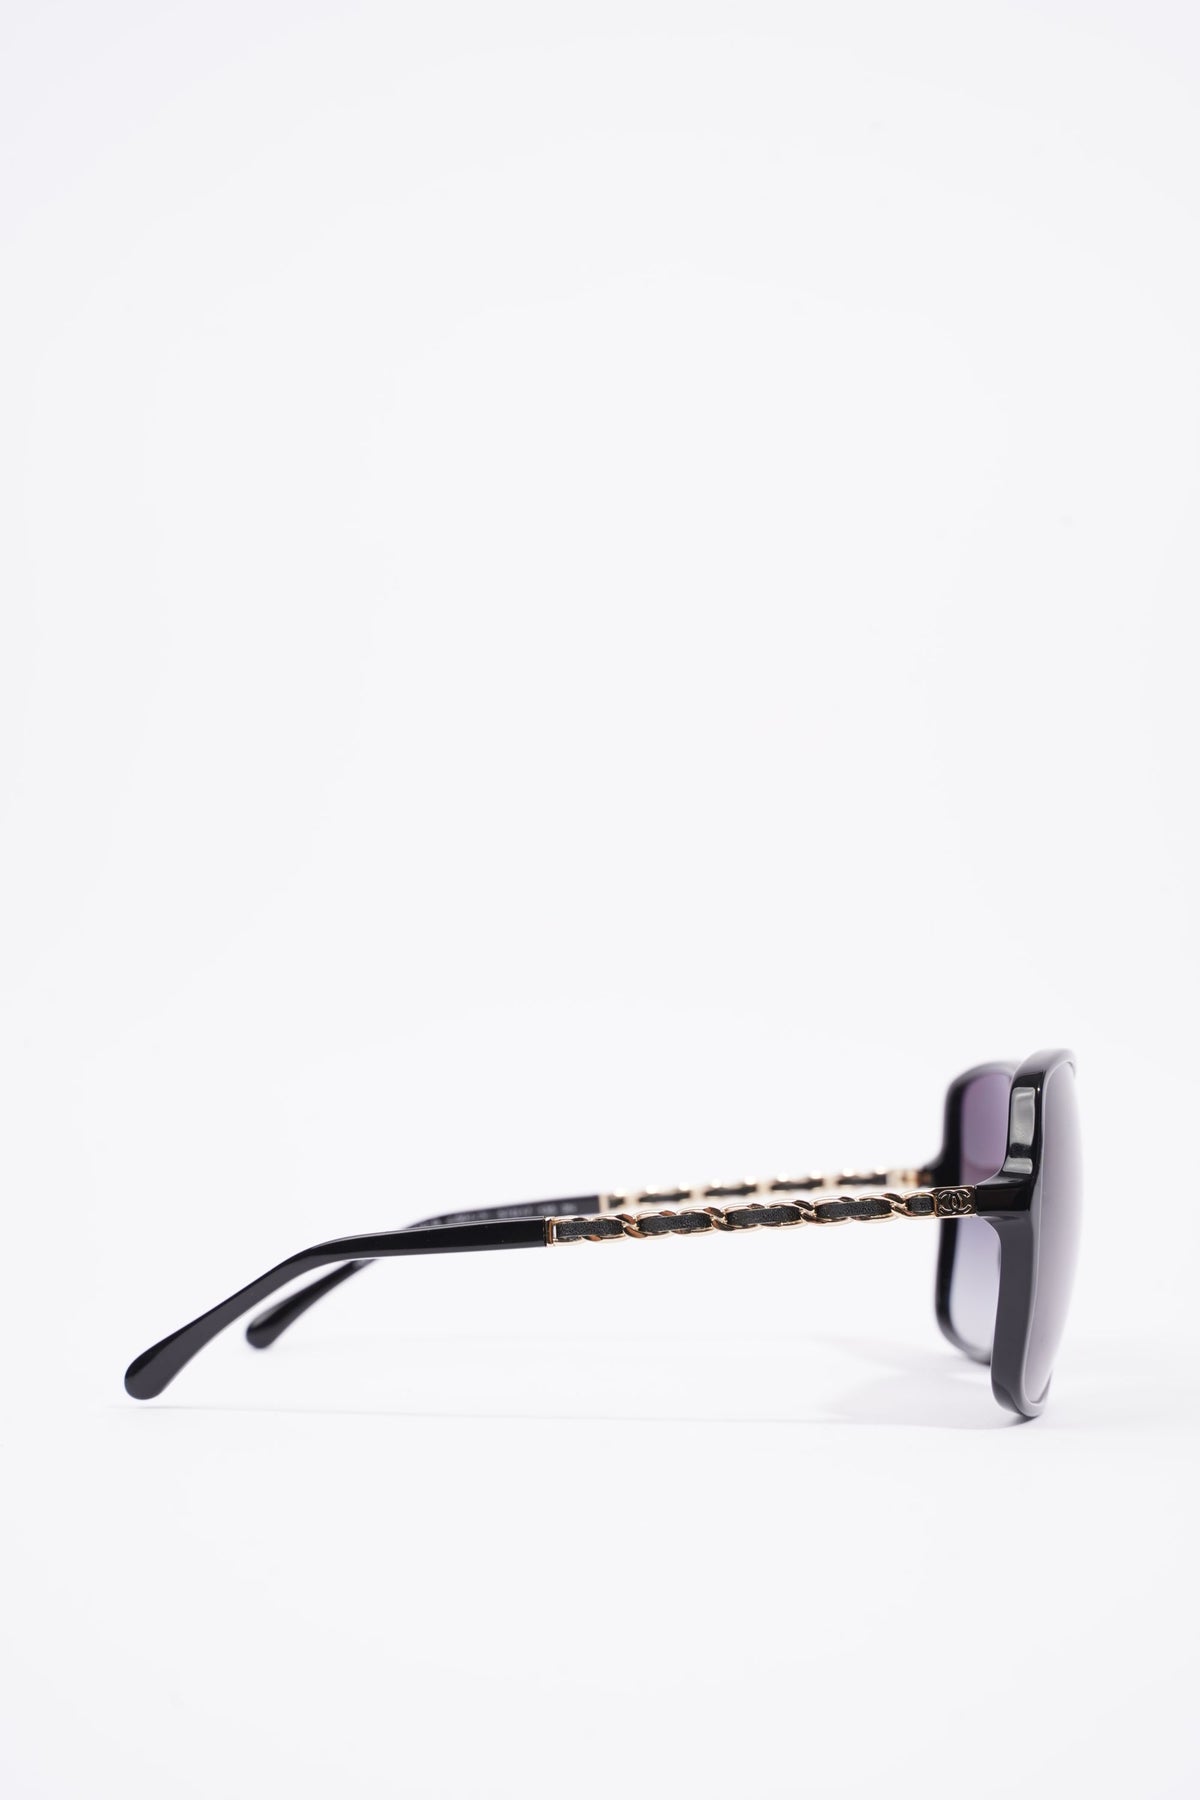 Chanel: Authentic Sunglasses Model # 5210 Q Col.1074/s6